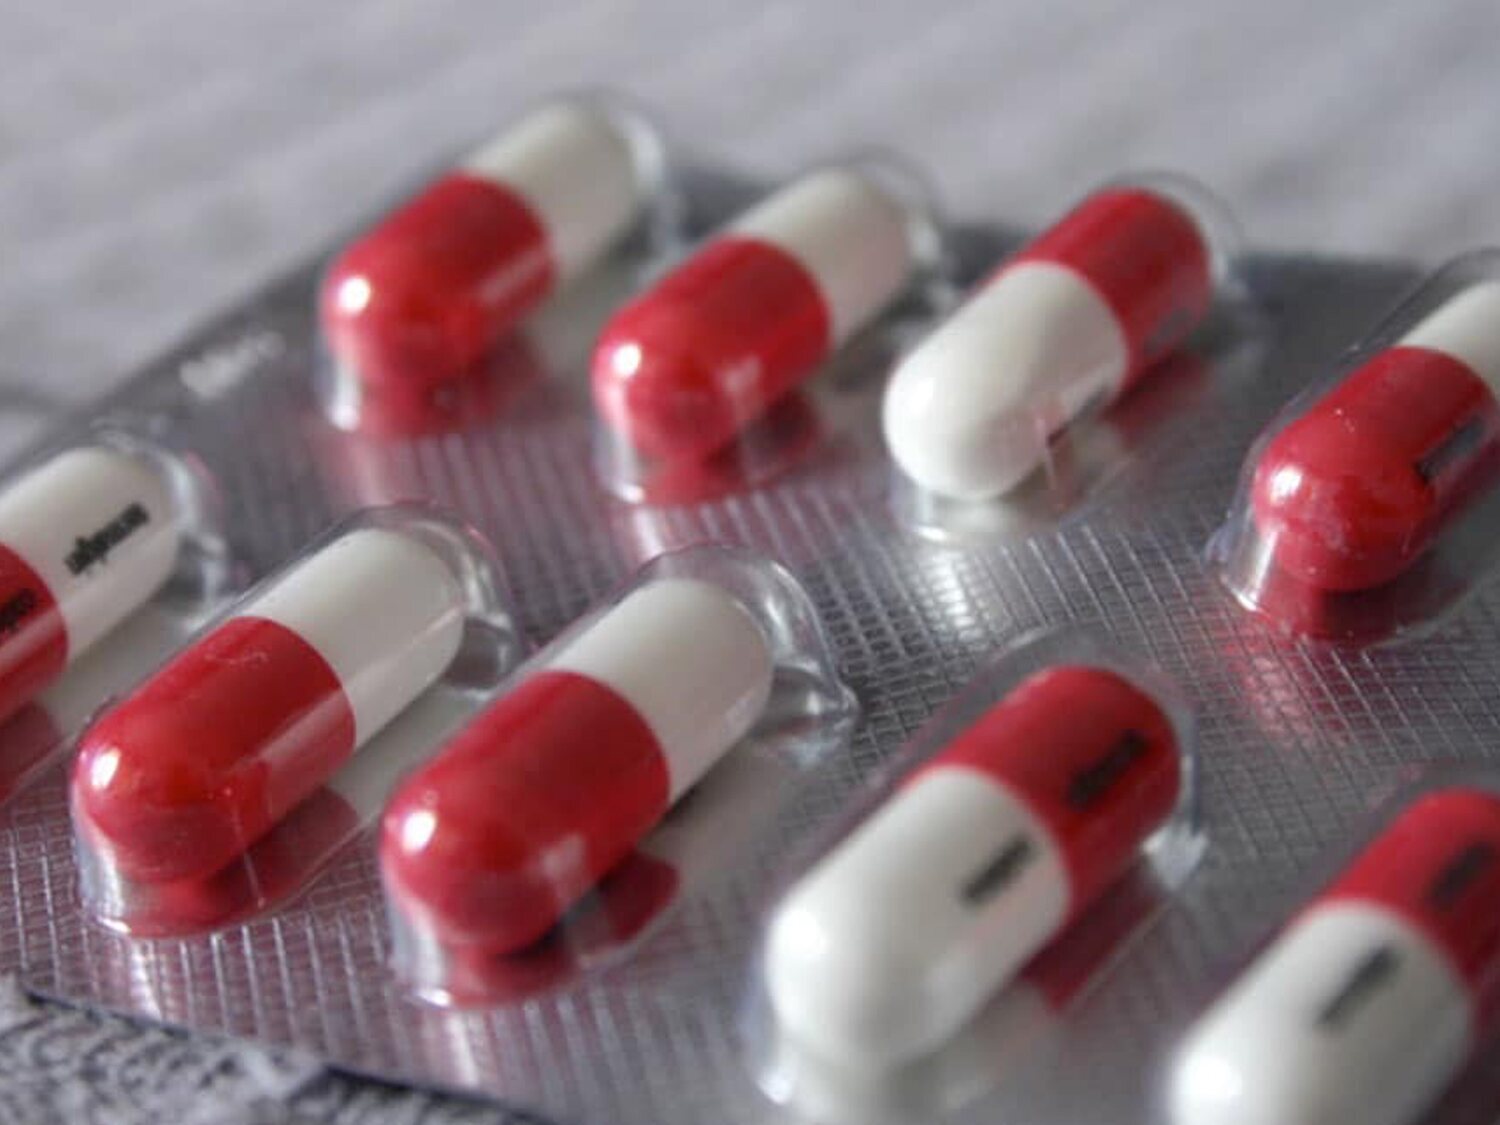 La Agencia Española del Medicamento alerta de un nuevo efecto secundario del Omeprazol